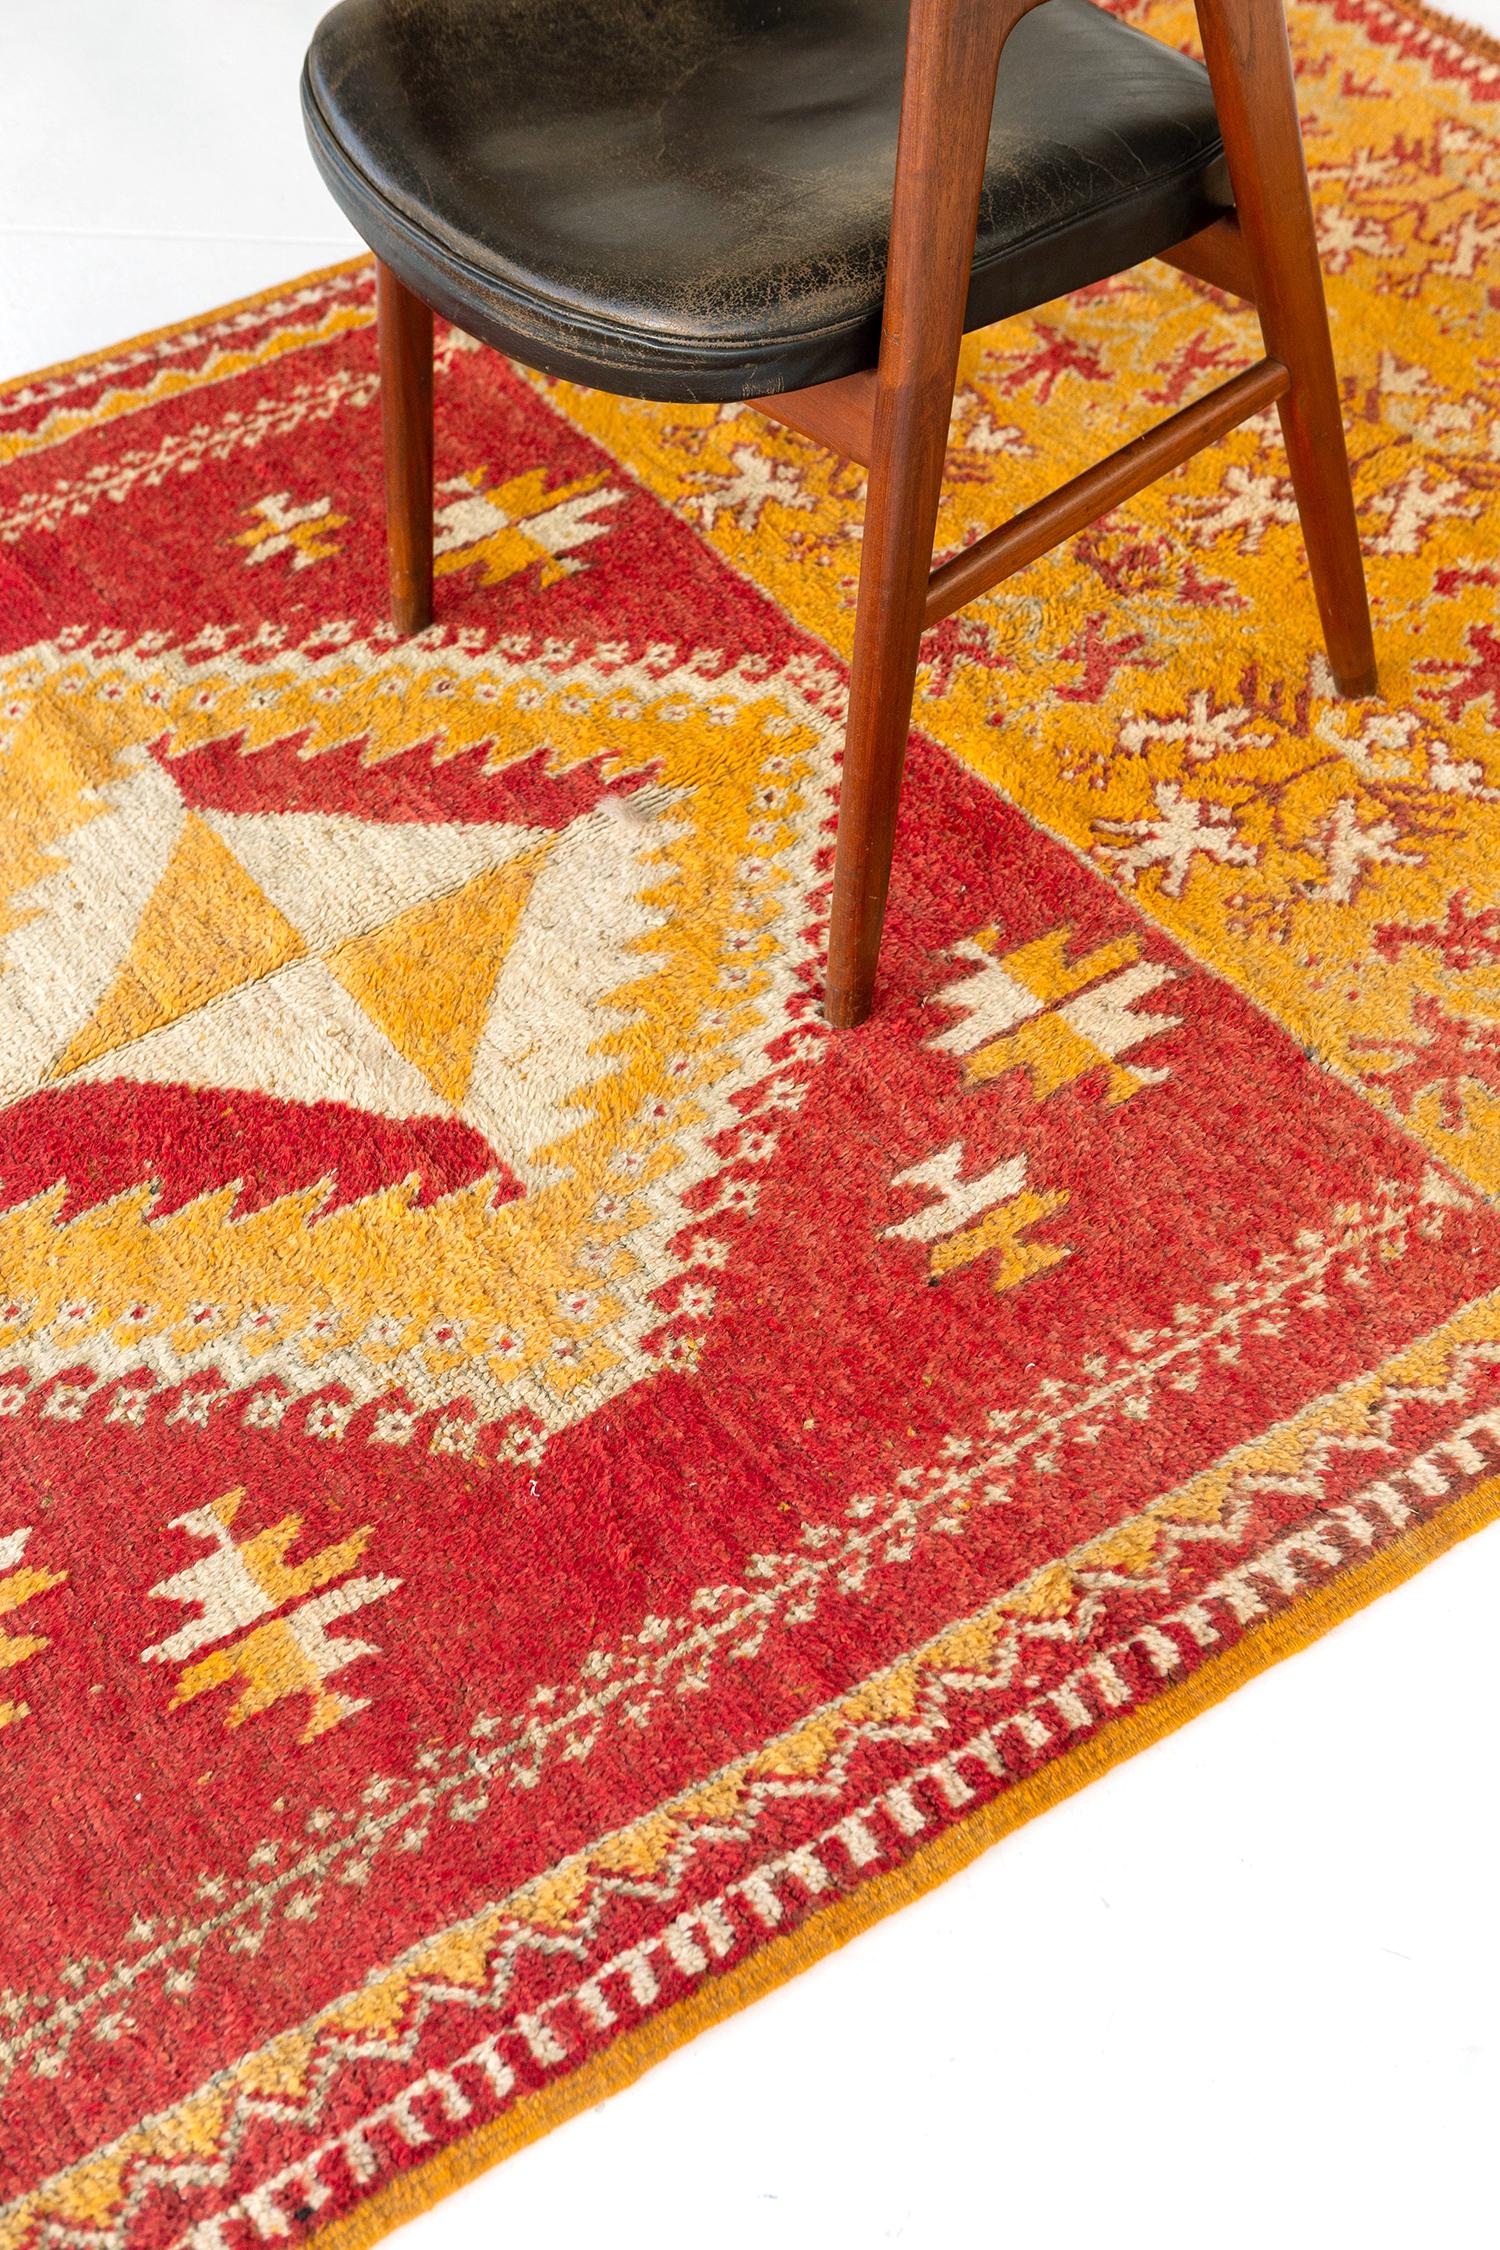 Au centre de la scène se trouve un médaillon losange vibrant qui s'étend sur les motifs floraux ornés de ce tapis marocain vintage inspiré de la tribu du Haut Atlas. Son ambiance vibrante, caractérisée par des nuances de jaune canari et d'orange,